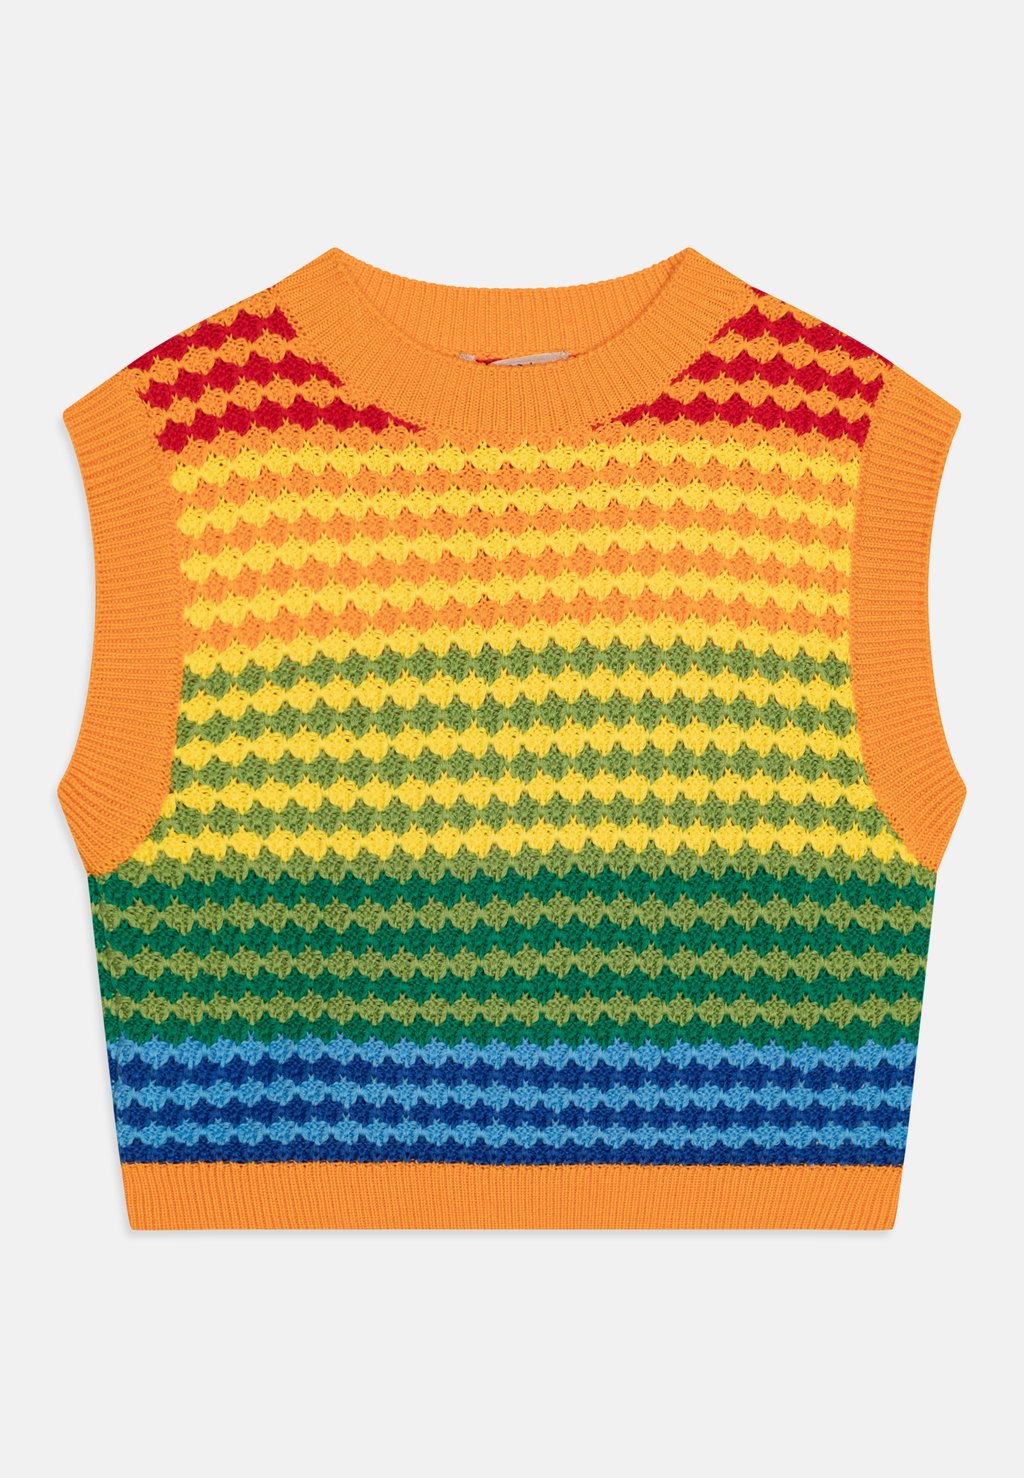 Свитер N°21, разноцветная радуга серьги multicolor rainbow